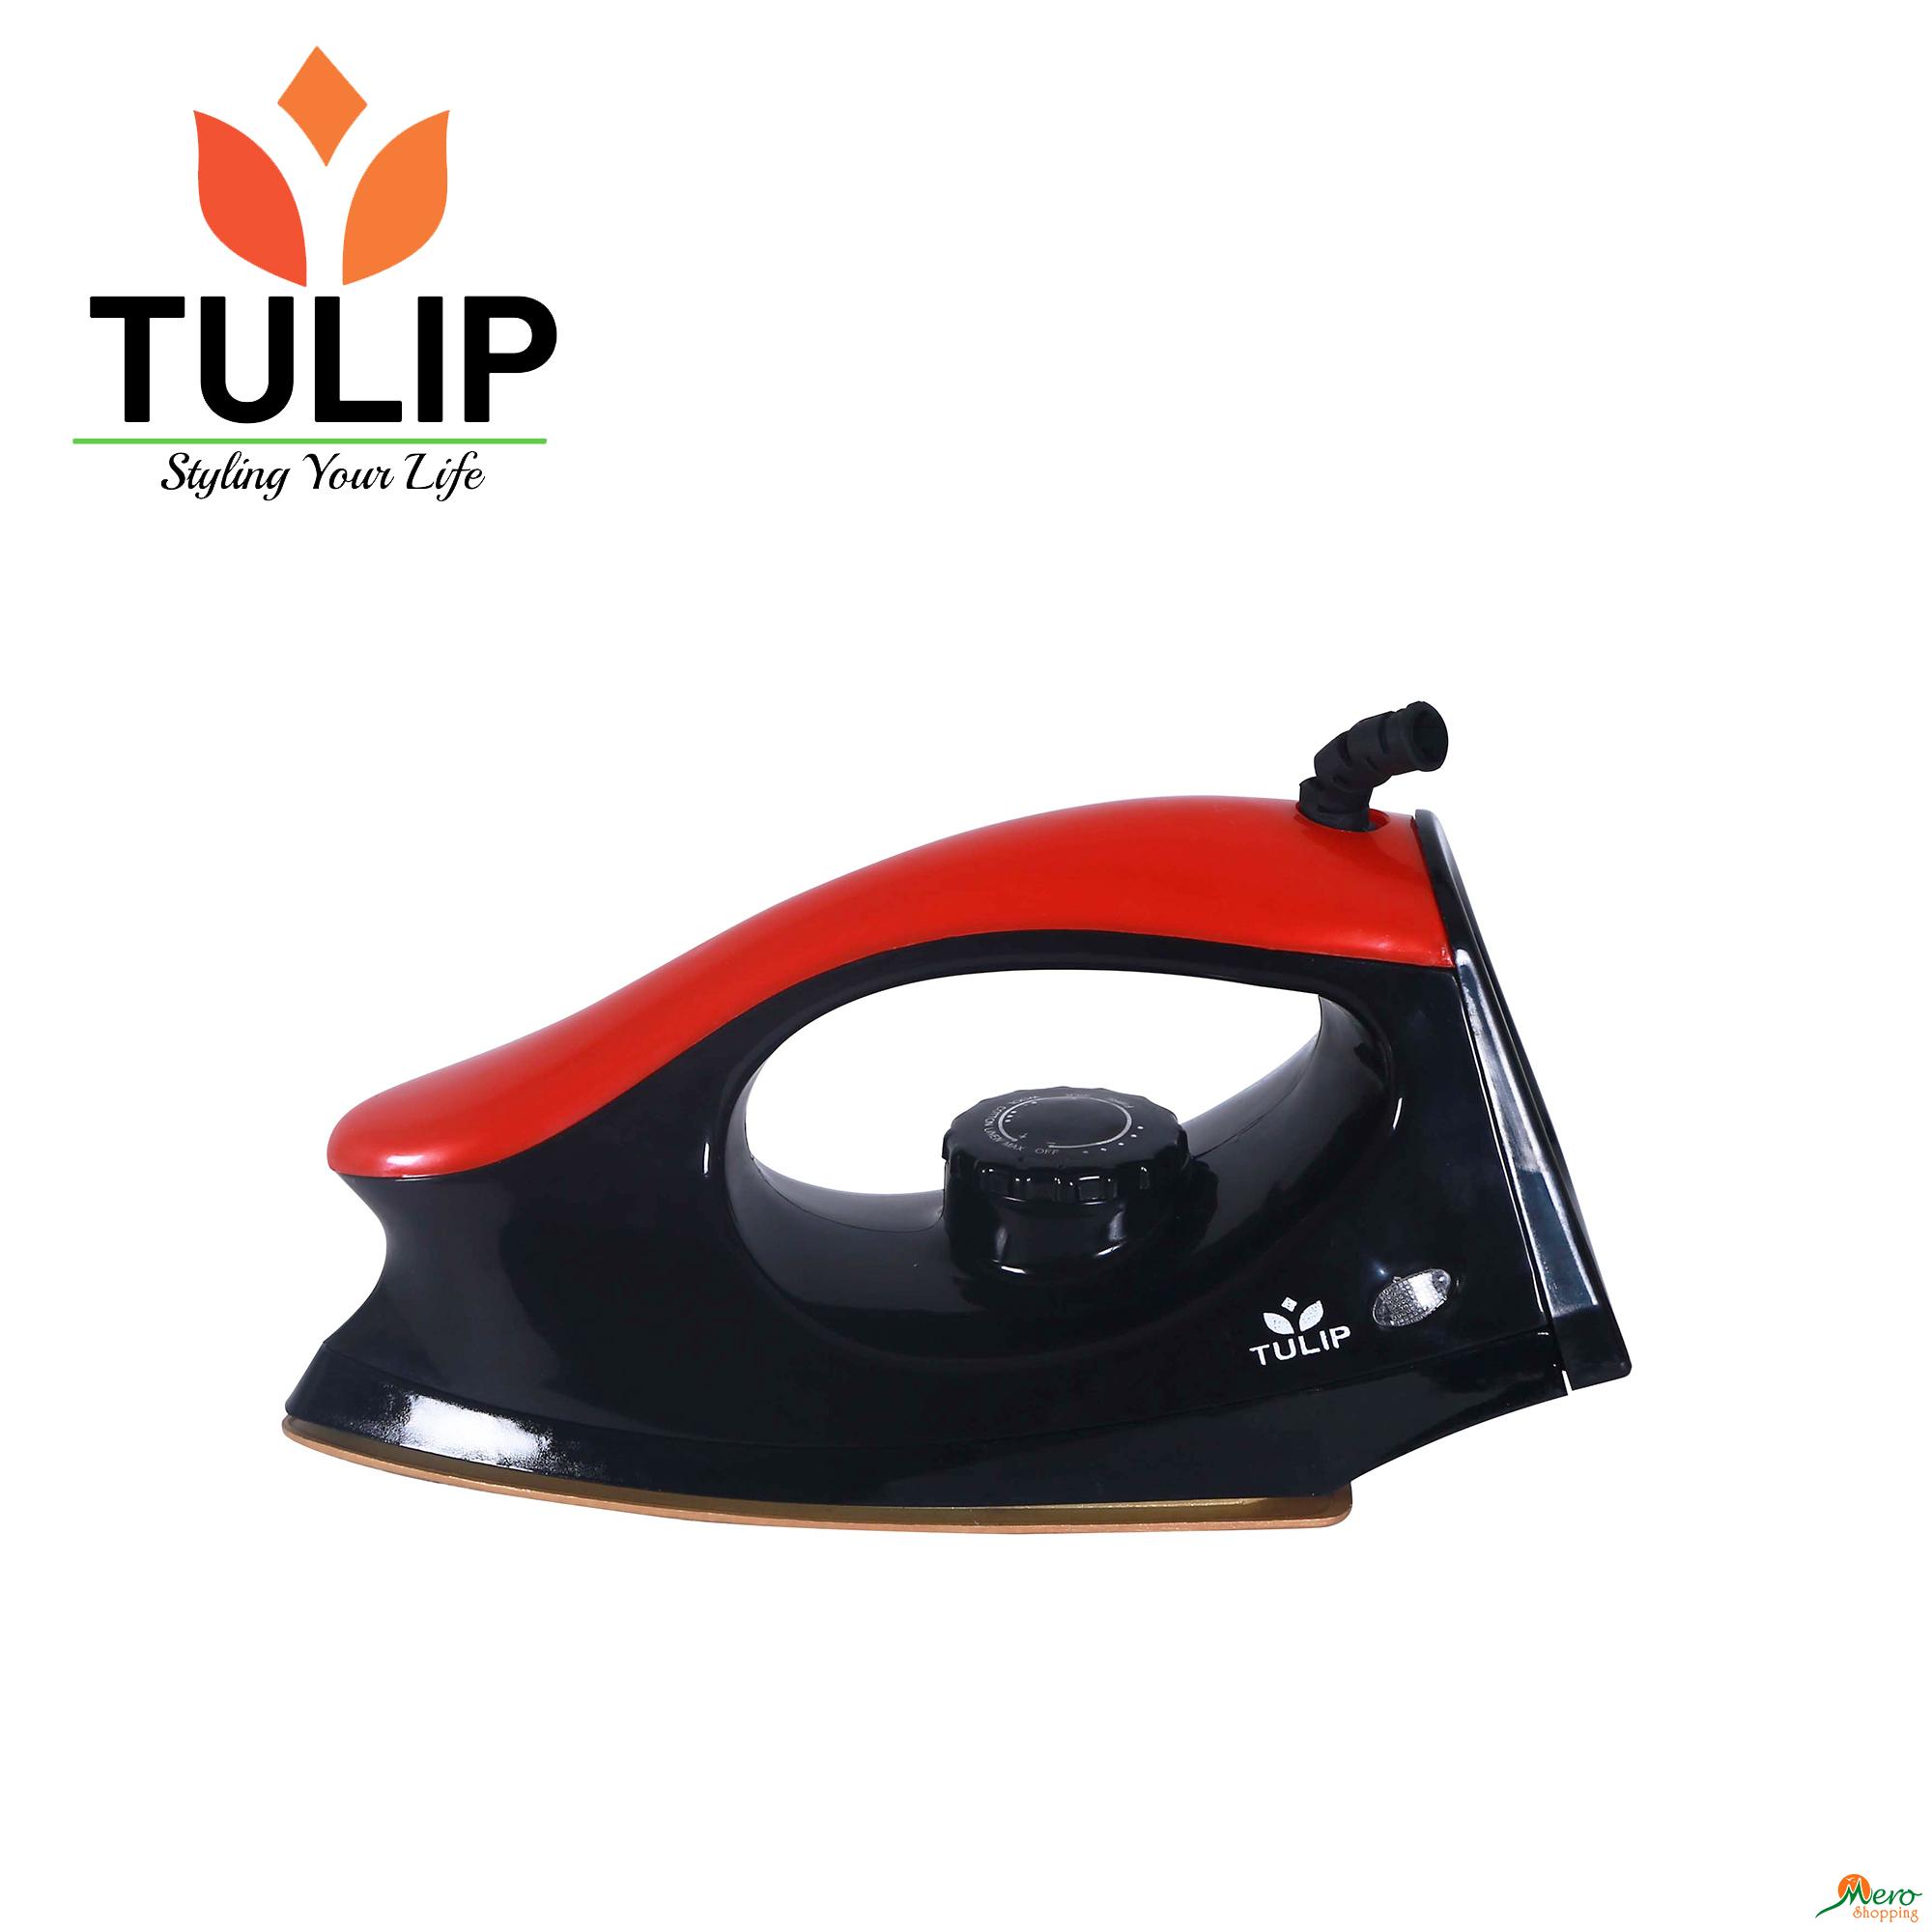 Tulip Iron Designer 1000W 